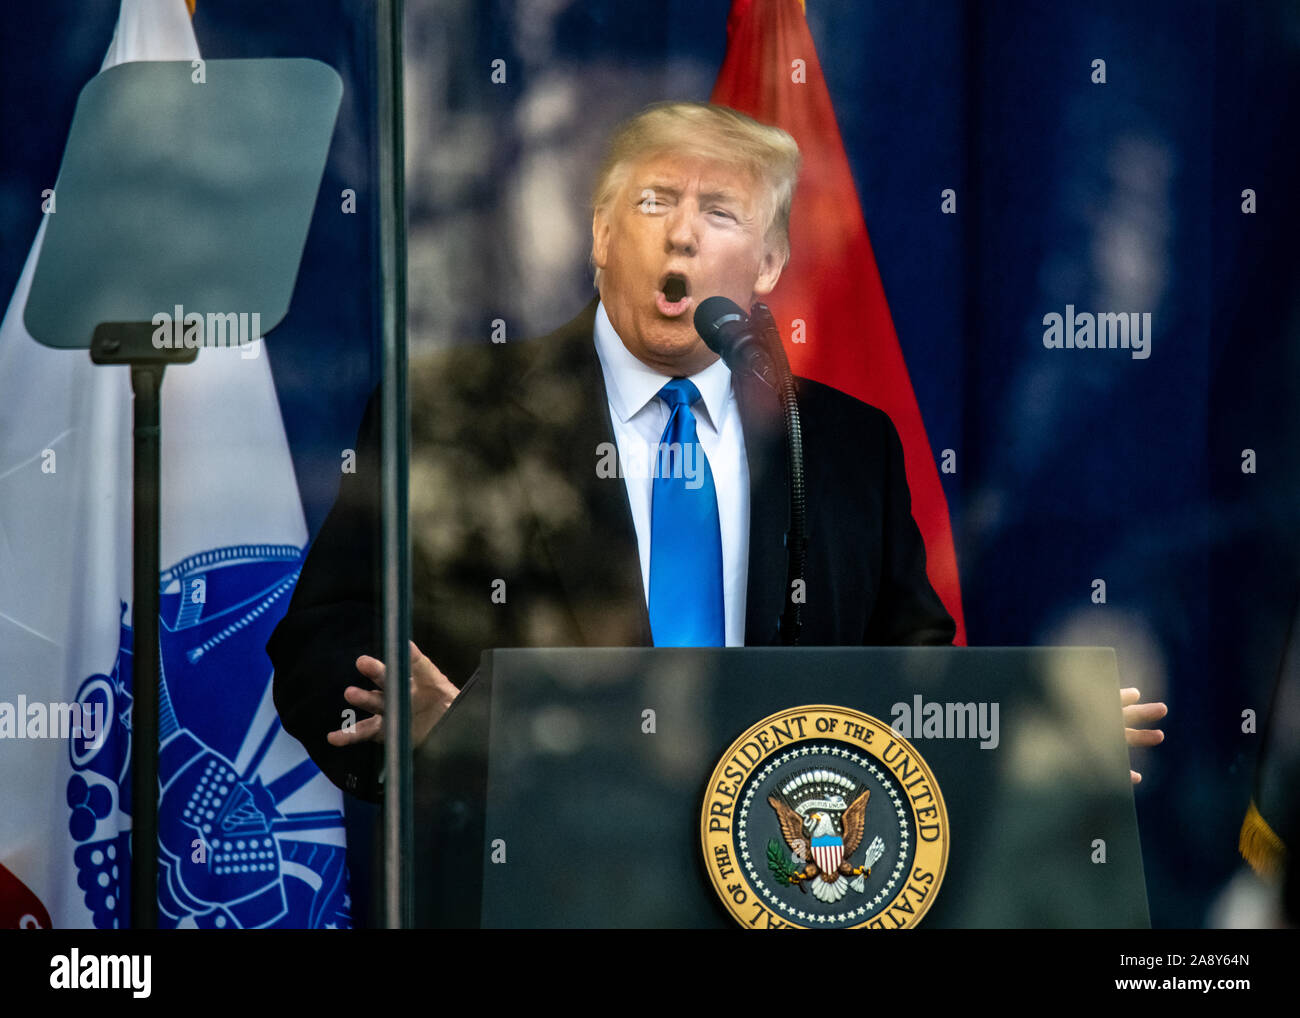 Nueva York, Estados Unidos, 11 de noviembre de 2019. El Presidente de EEUU, Donald Trump mira un teleprompter como le proporciona una dirección detrás de un cristal a prueba de balas antes del inicio del Desfile del Día de los Veteranos en la Ciudad de Nueva York. Crédito: Enrique Shore/Alamy Live News Foto de stock